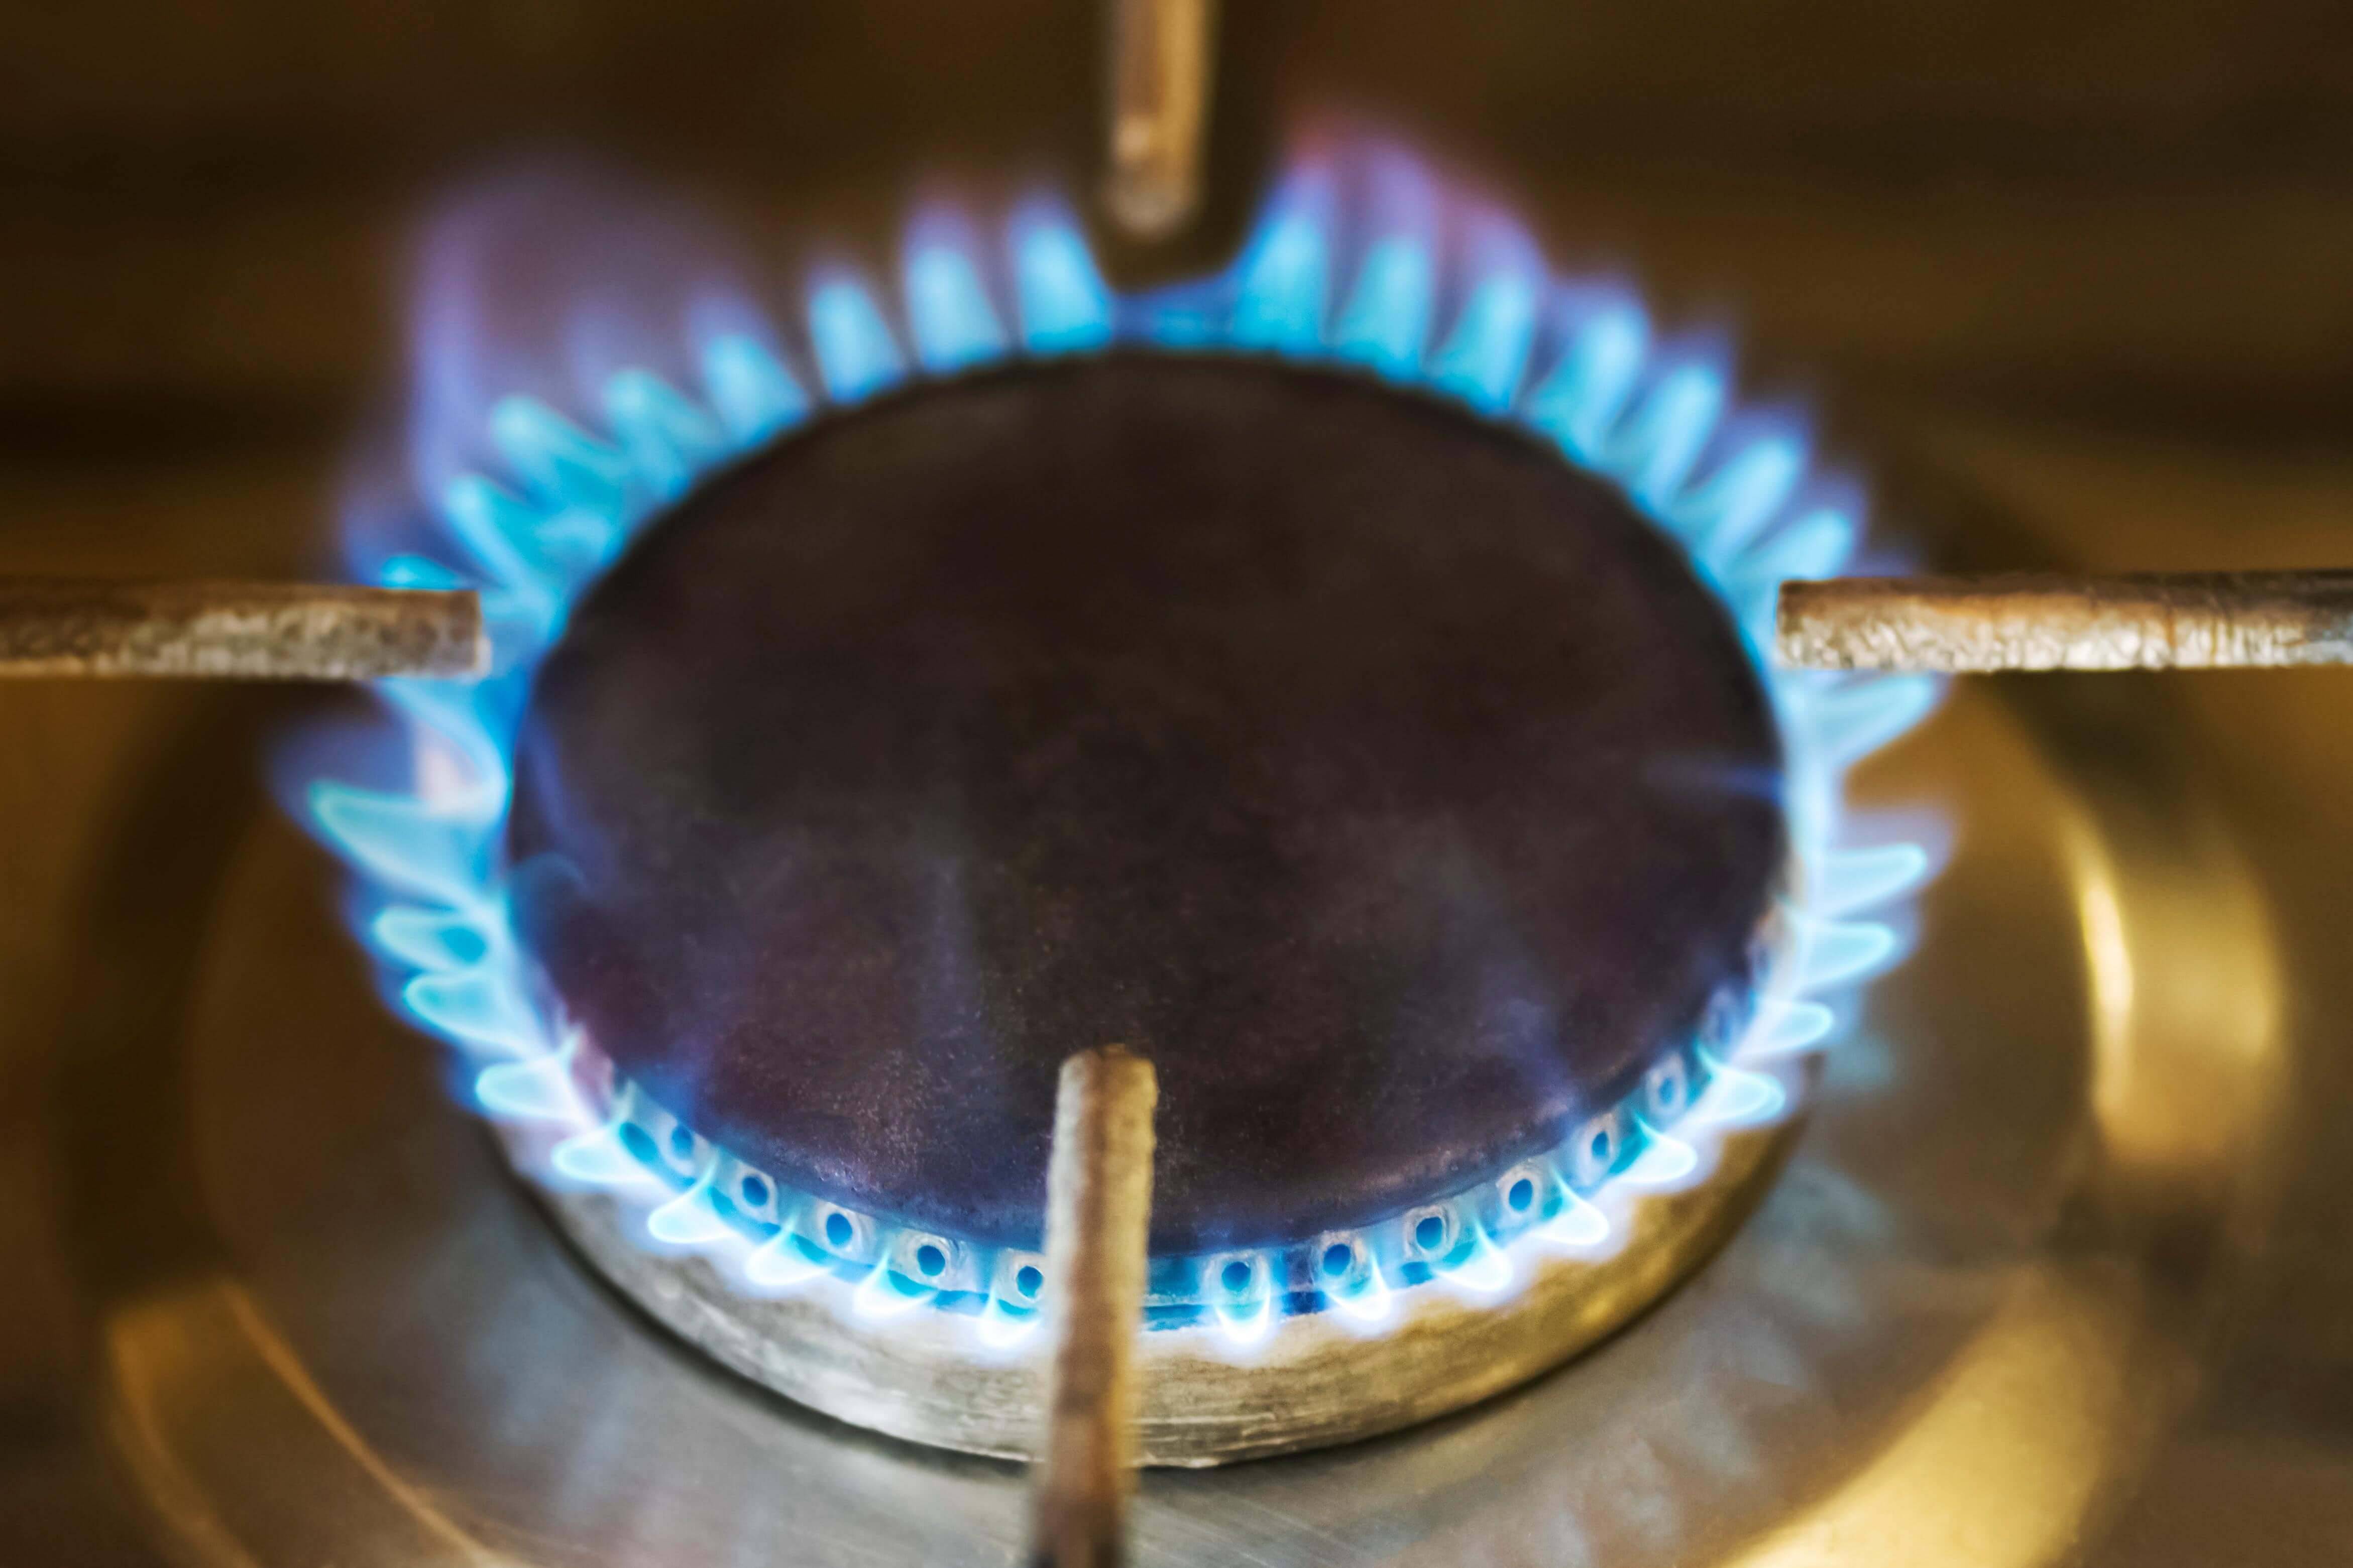 Fine mercato tutelato gas